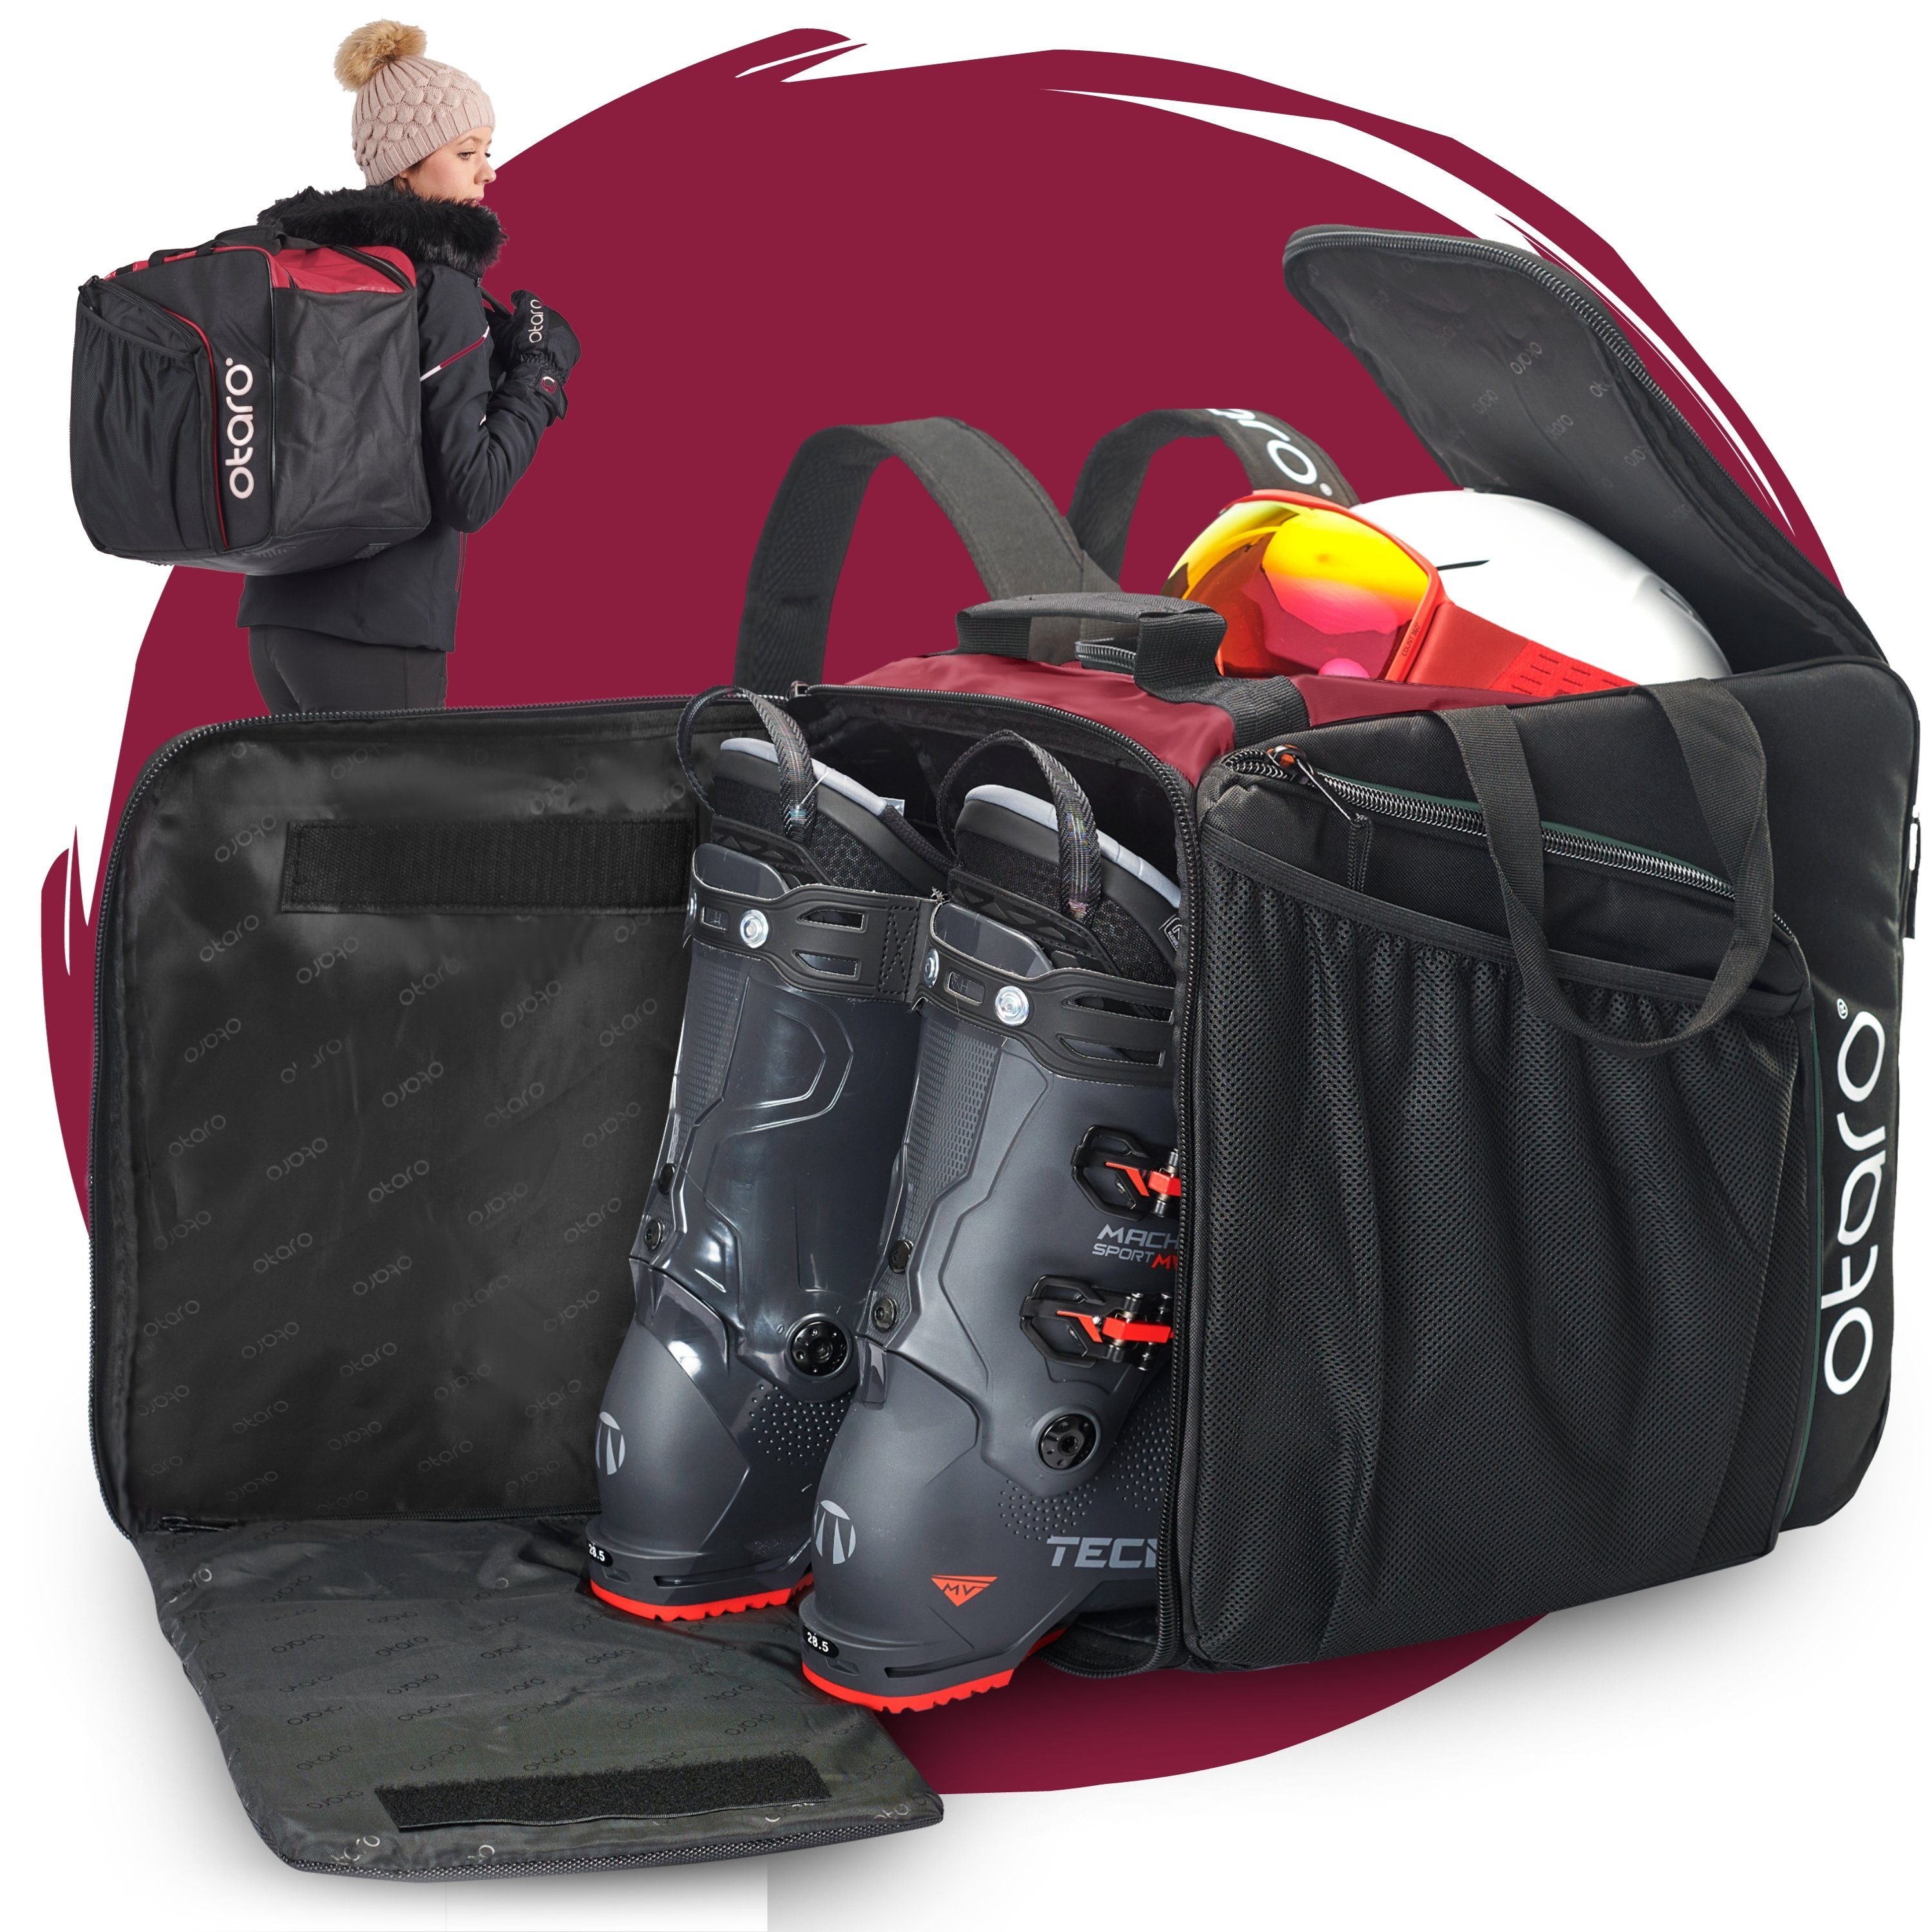 Otaro Sporttasche Skischuhtasche mit Helmfach & bequemen Rucksackträger, Pro 57L (Schutz für deine Ausrüstung, Perfekt durchdacht, ausklappbare Standfläche, für Skifahrer & Boarder) Schwarz Bordeauxrot